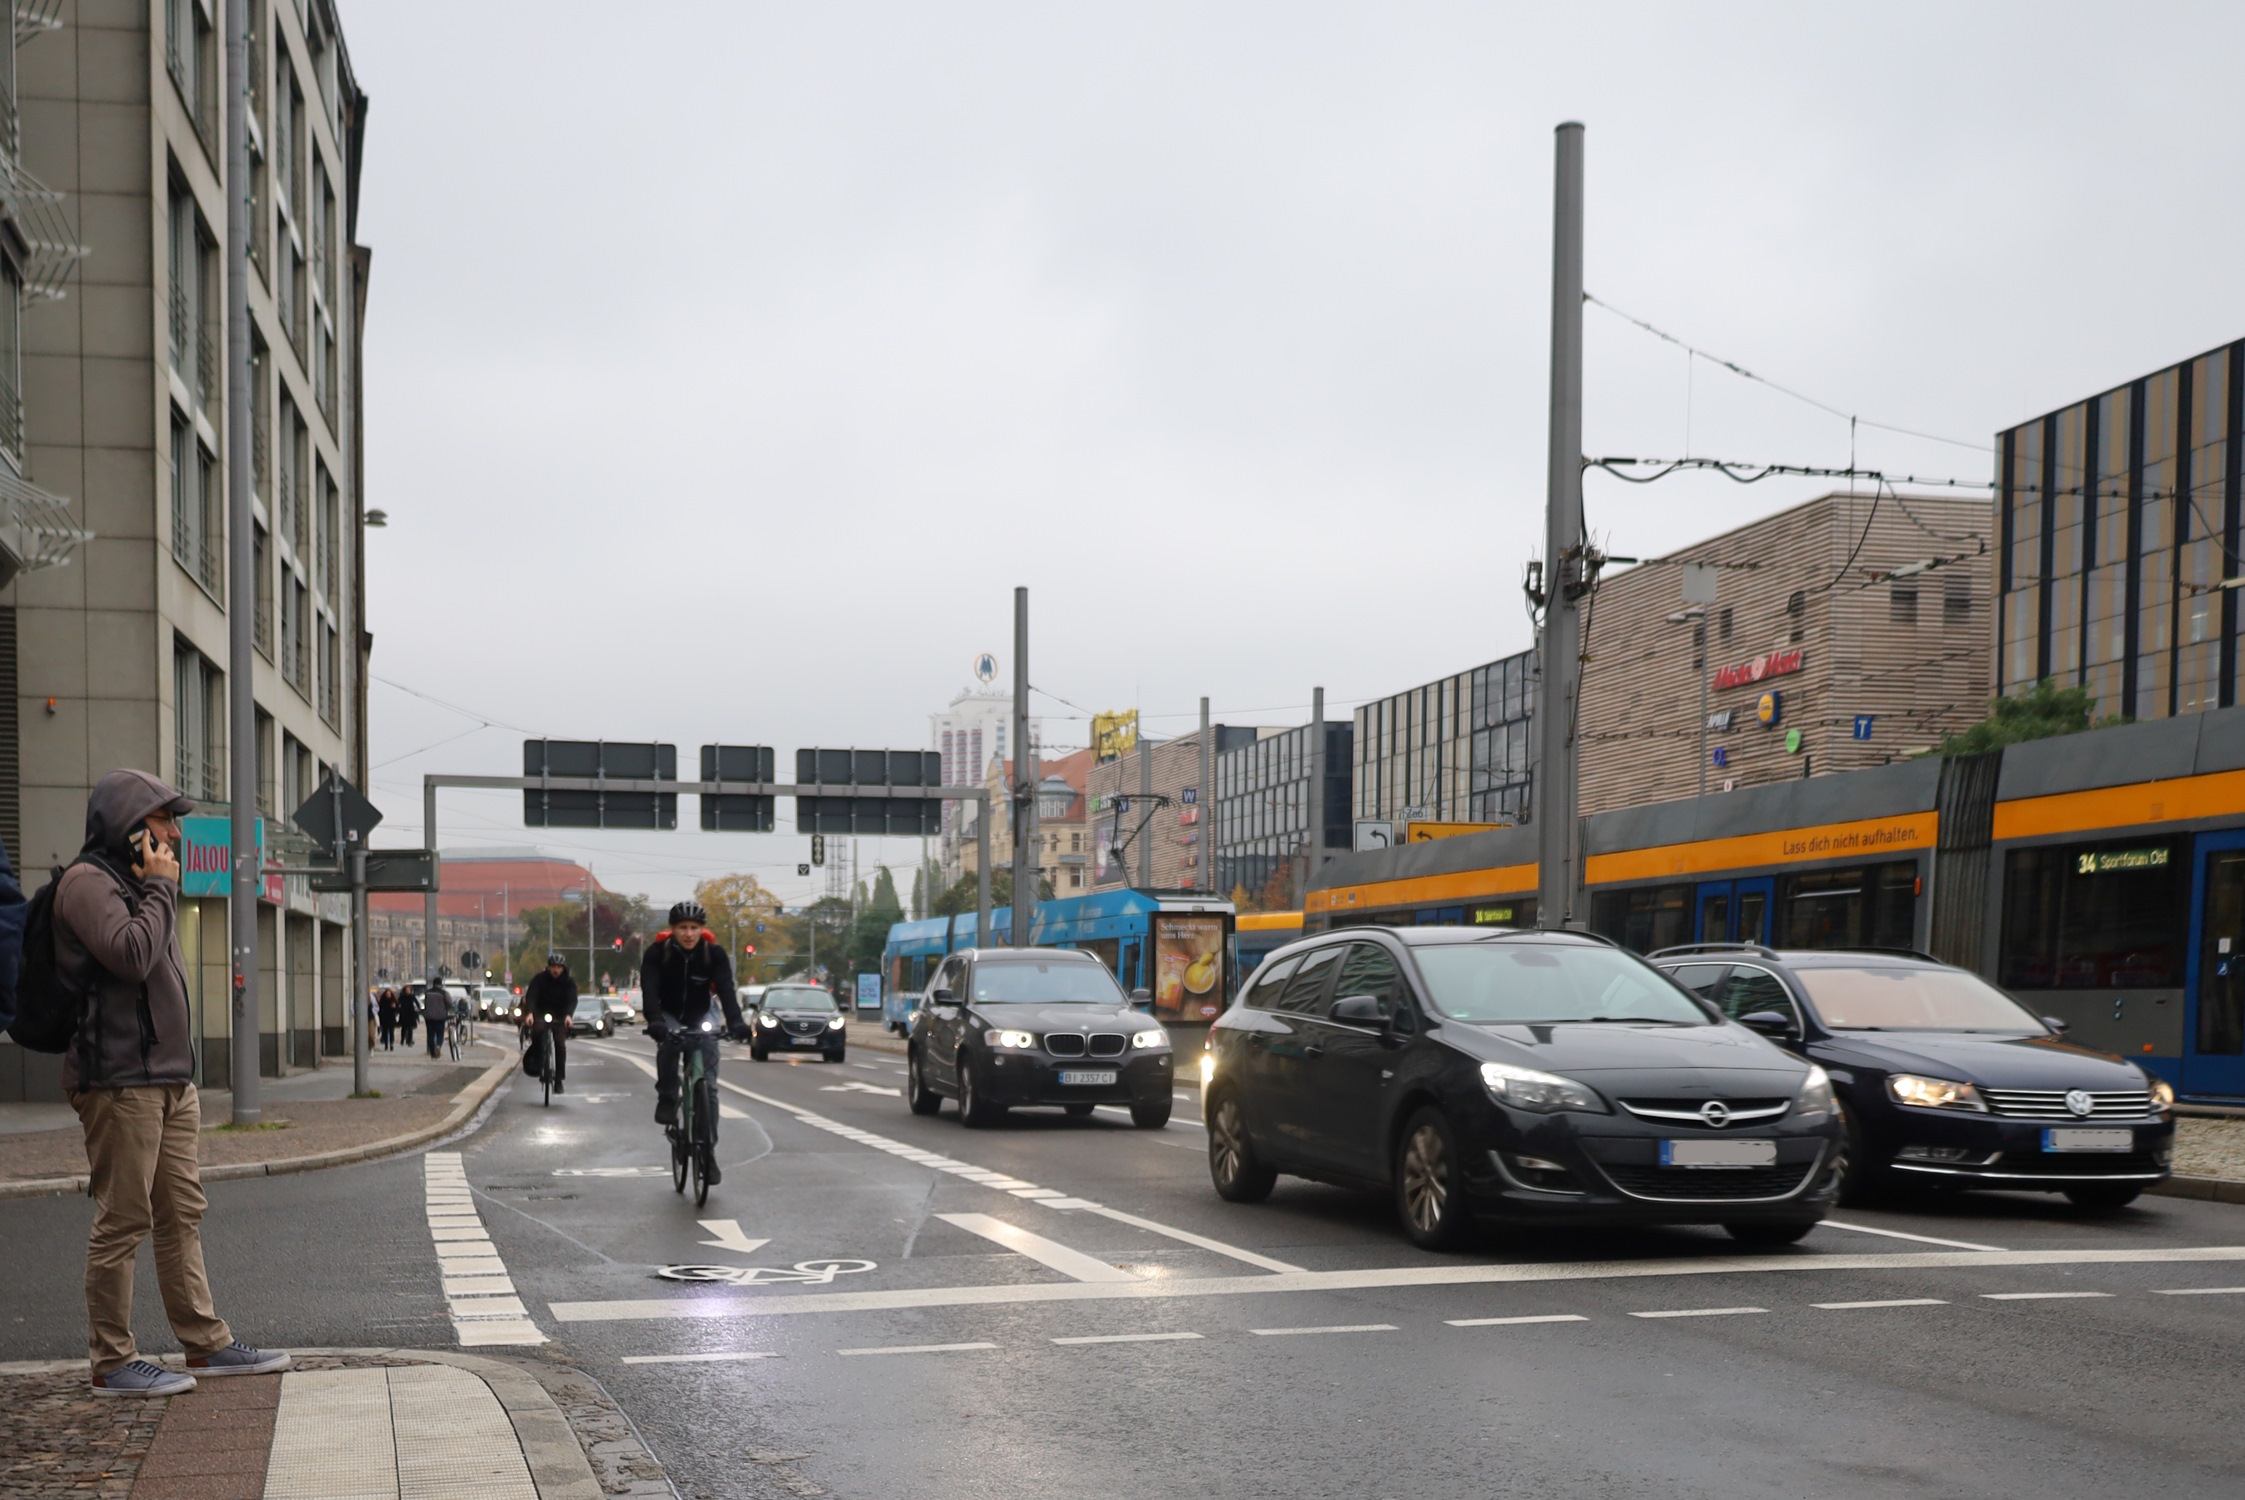 Befahrene Straße mit Autos, Radfahrer und Tram in Leipzig.